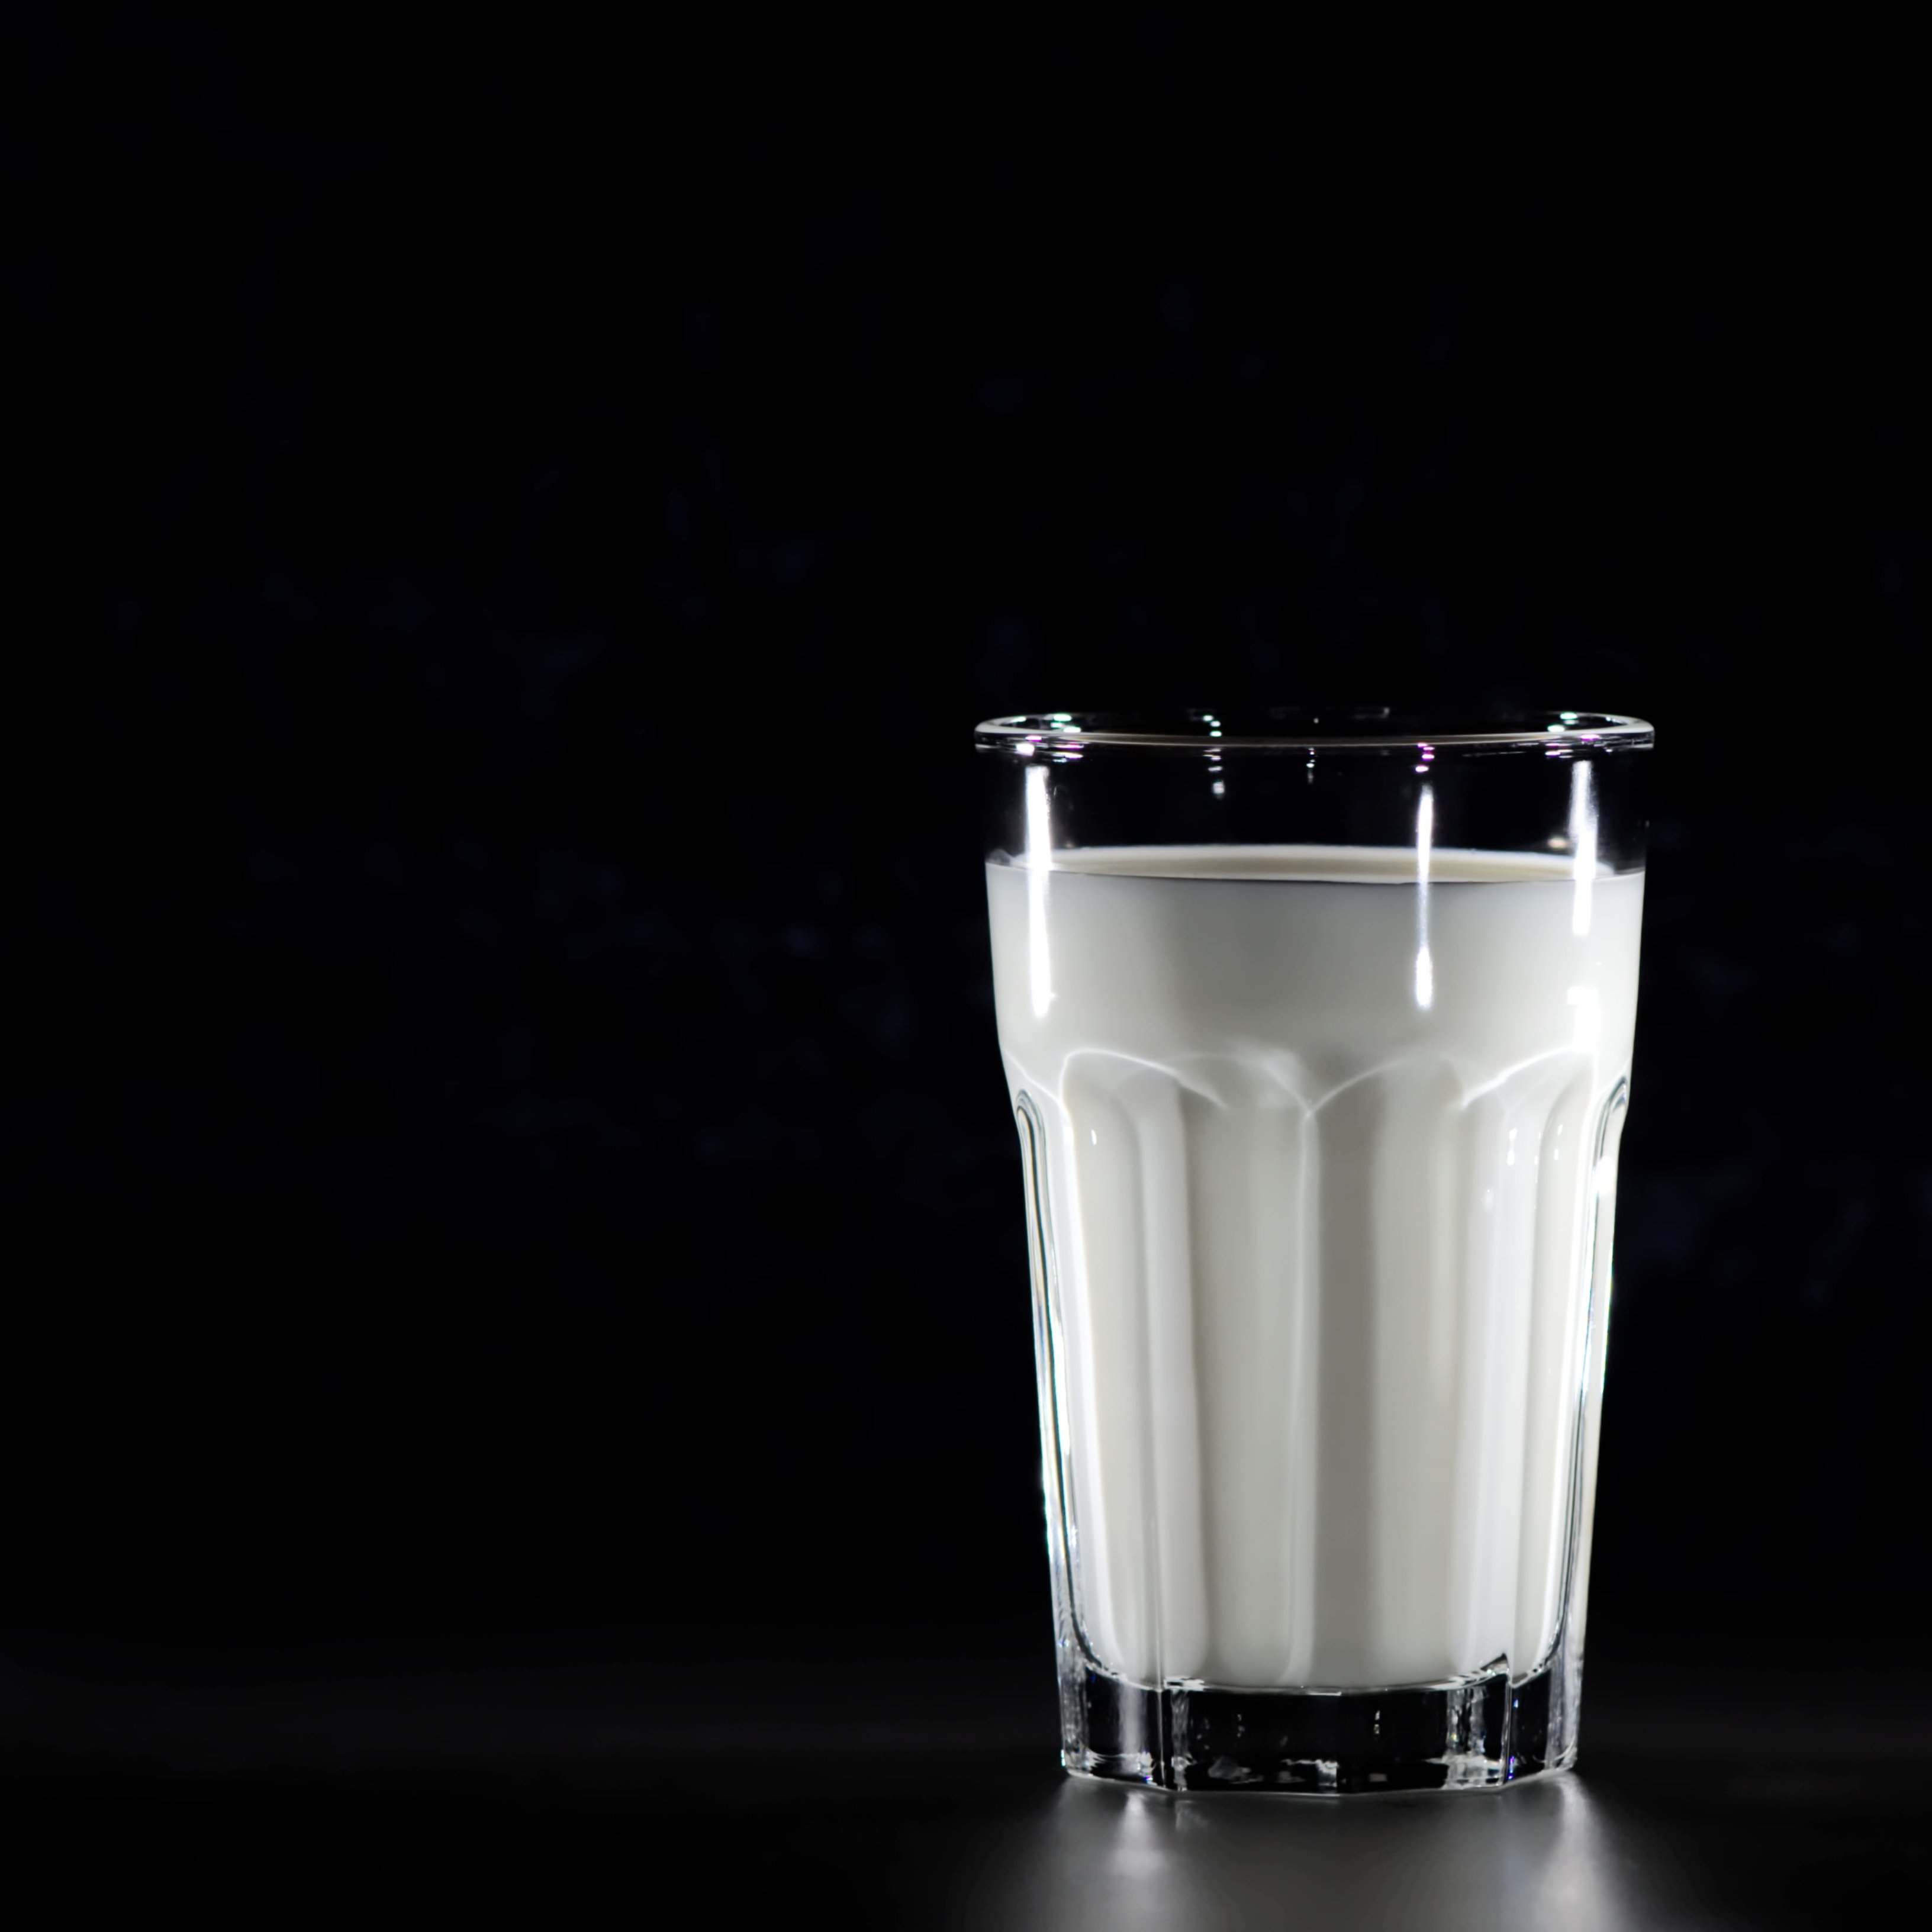 Cuál es la mejor leche para los niños, la entera o la desnatada